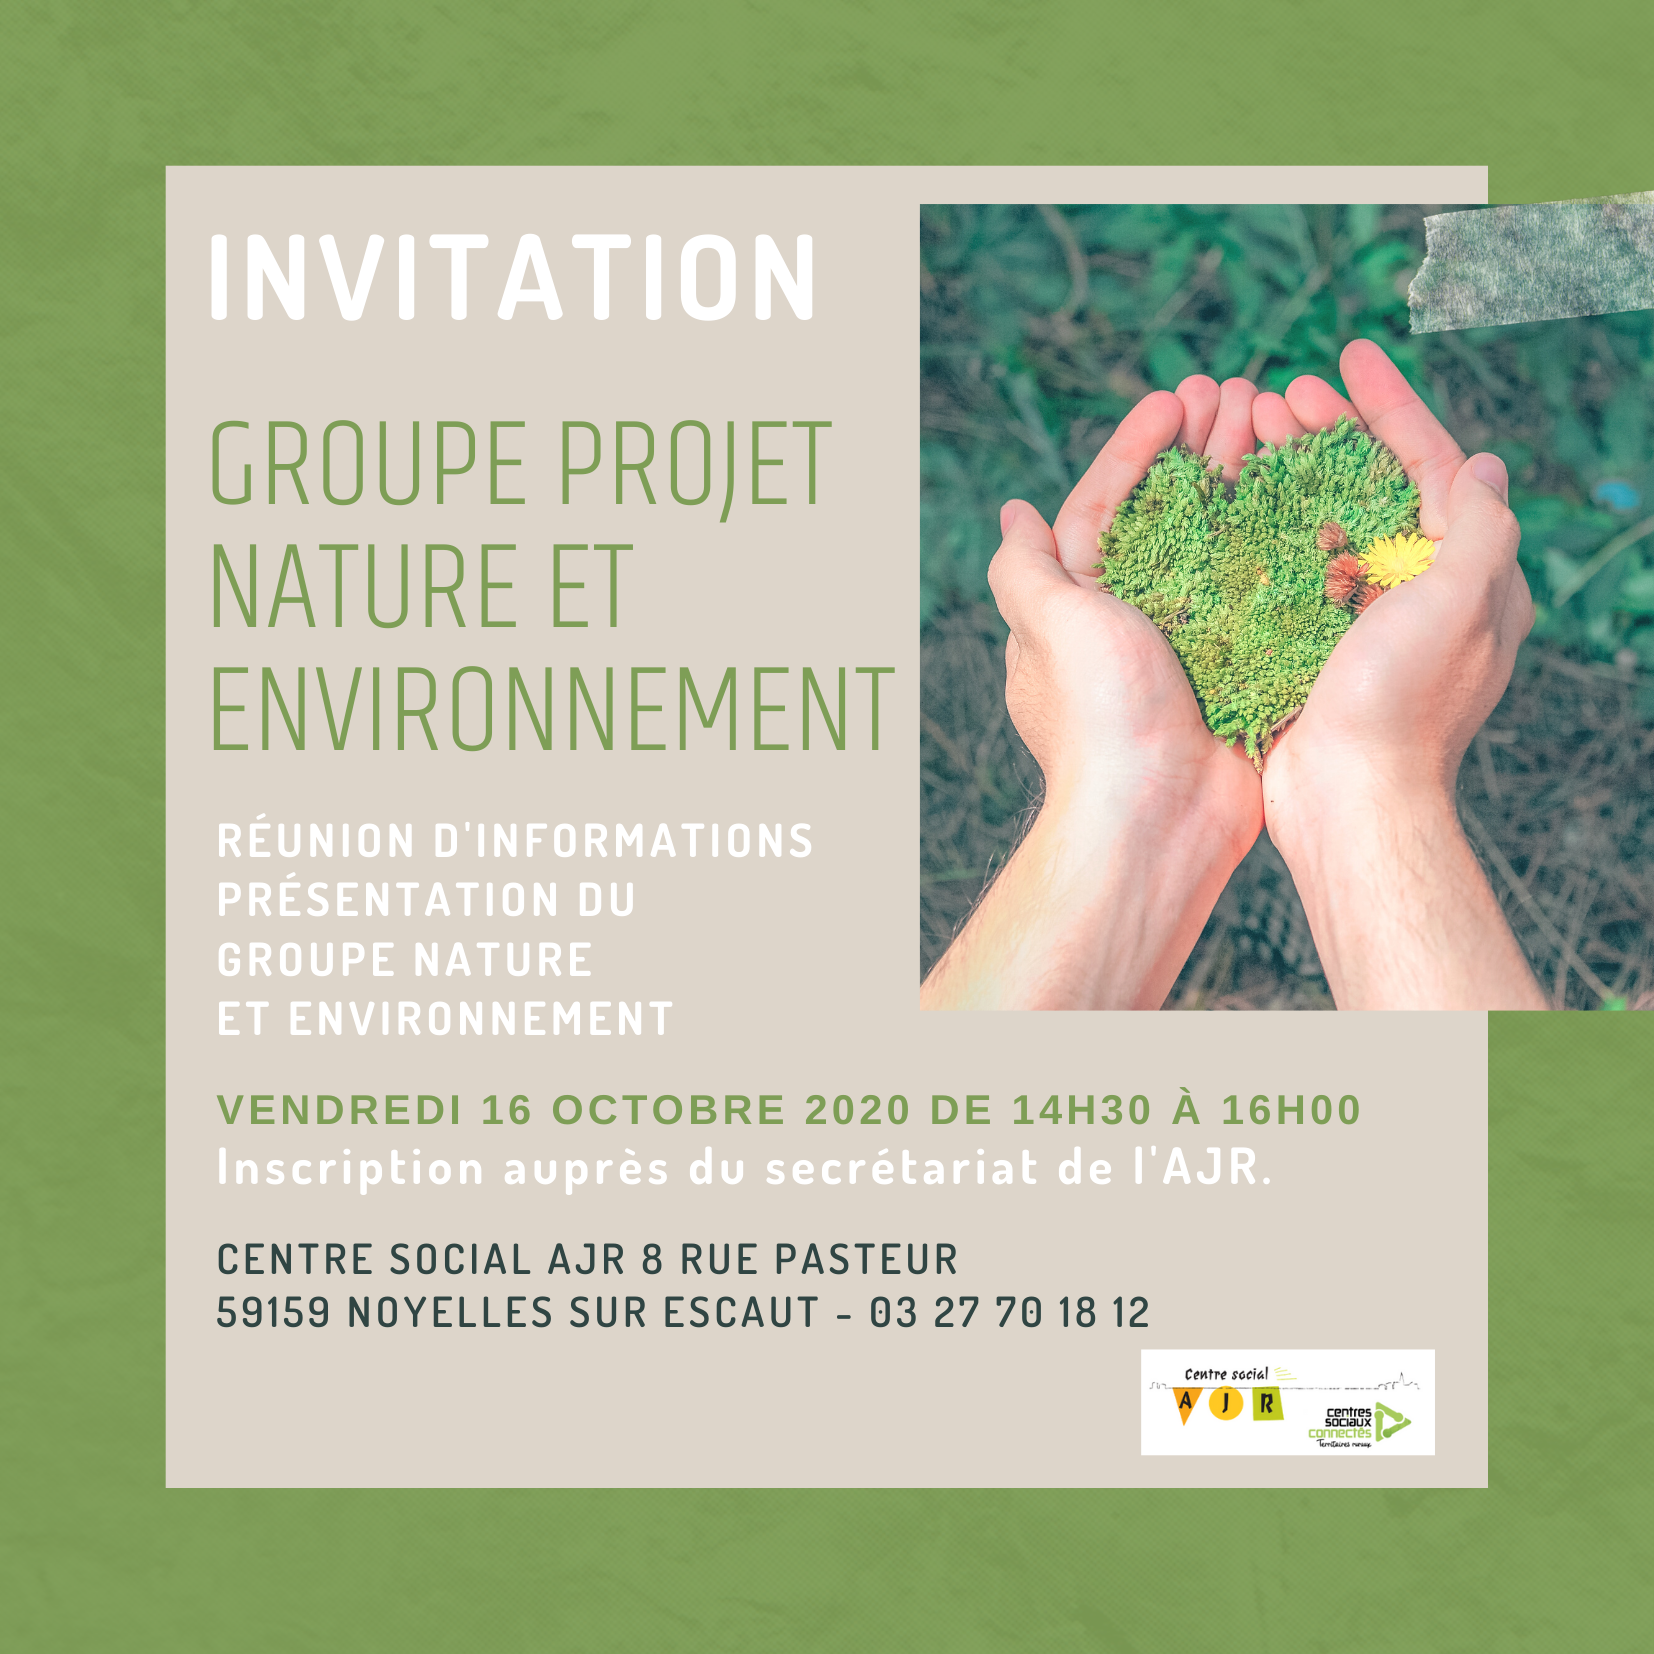 Invitation groupe projet nature et environnement